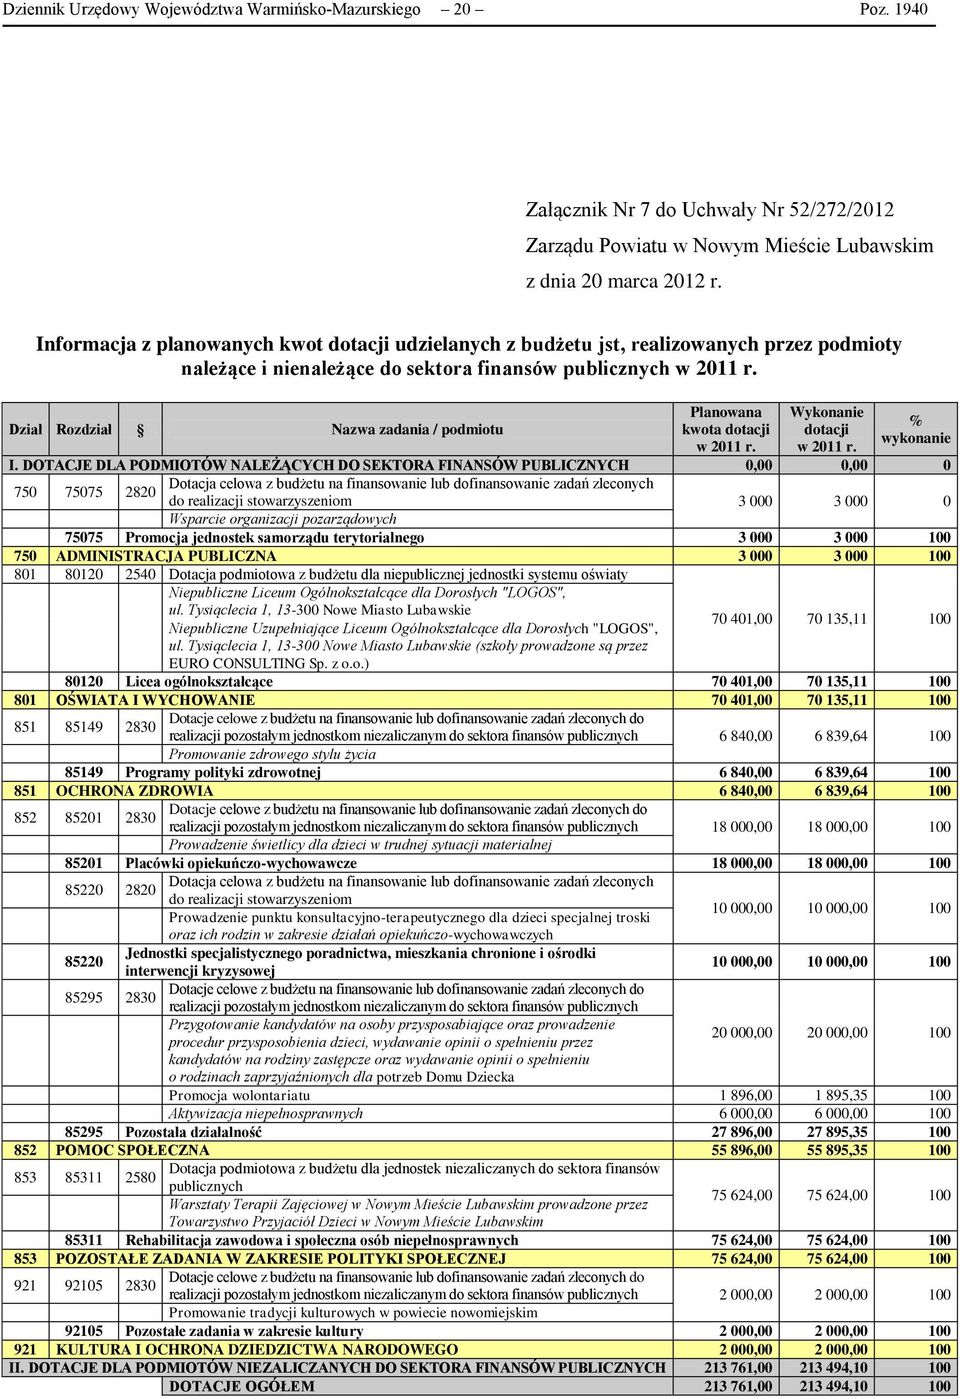 Dział Rozdział Nazwa zadania / podmiotu Planowana kwota dotacji w 2011 r. Wykonanie dotacji w 2011 r. % wykonanie I.